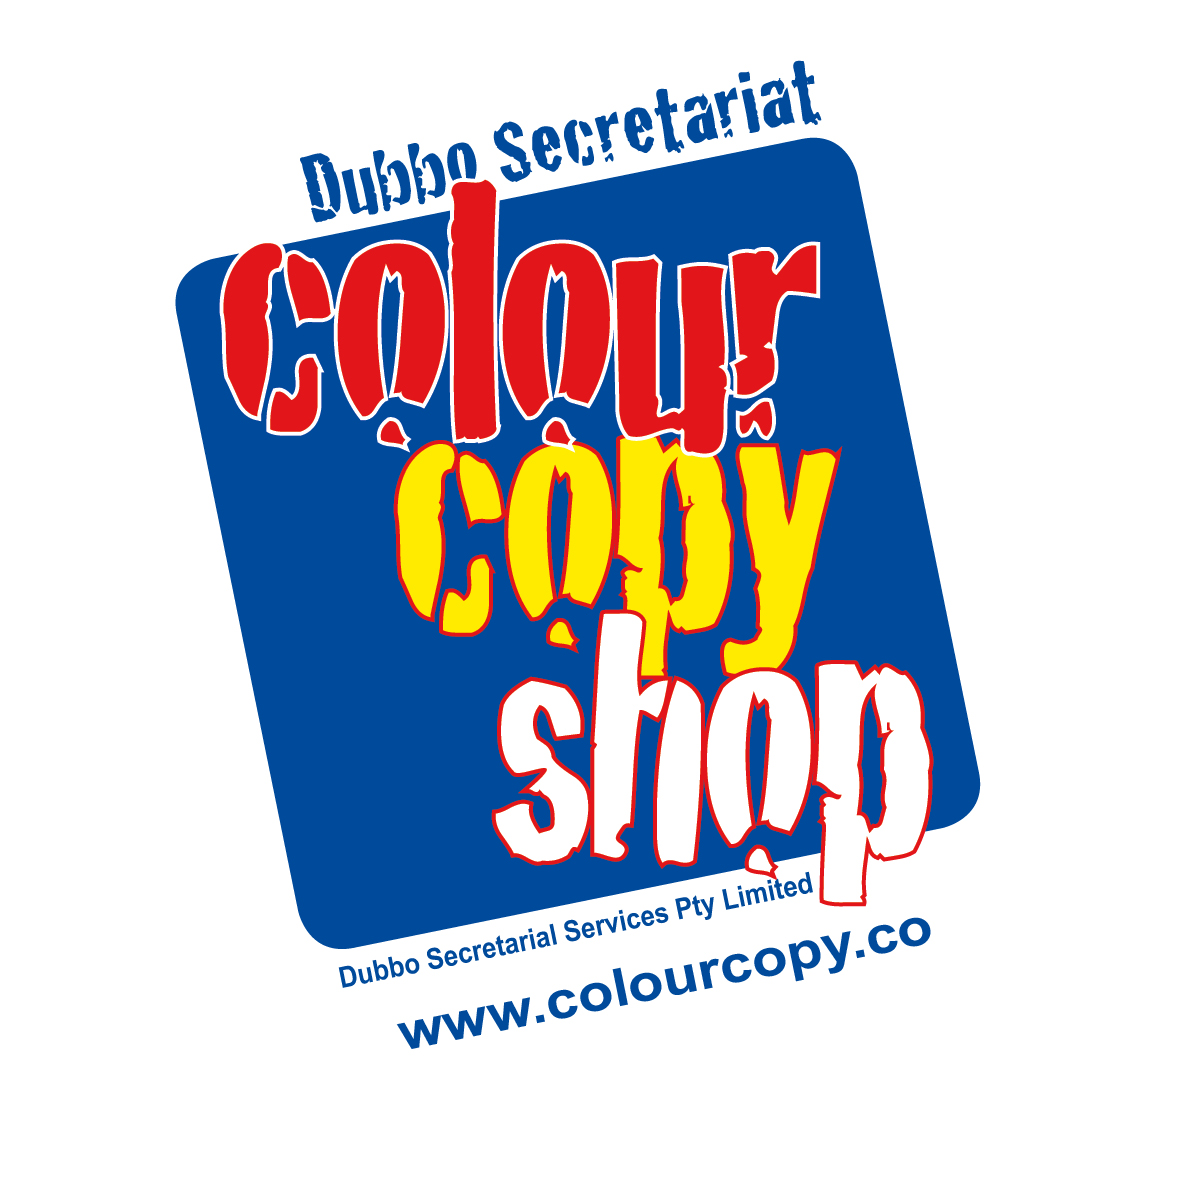 Dubbo Secretariat Colour Copy Shop P/L